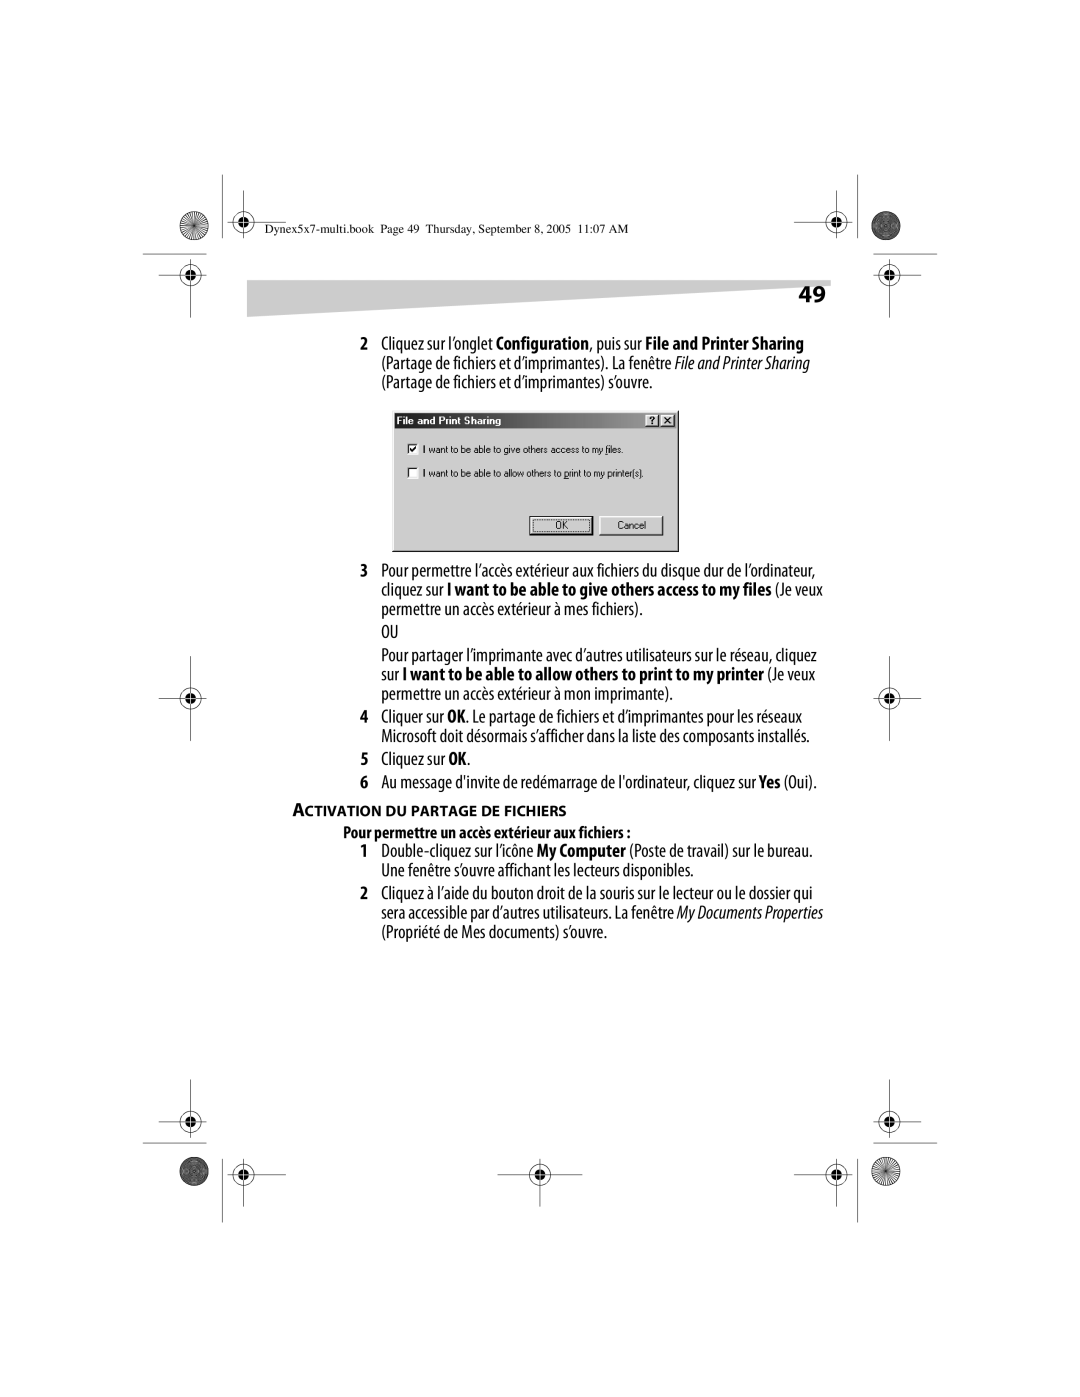 Dynex DX-E201 manual Cliquez sur OK, Pour permettre un accès extérieur aux fichiers, Activation Du Partage De Fichiers 